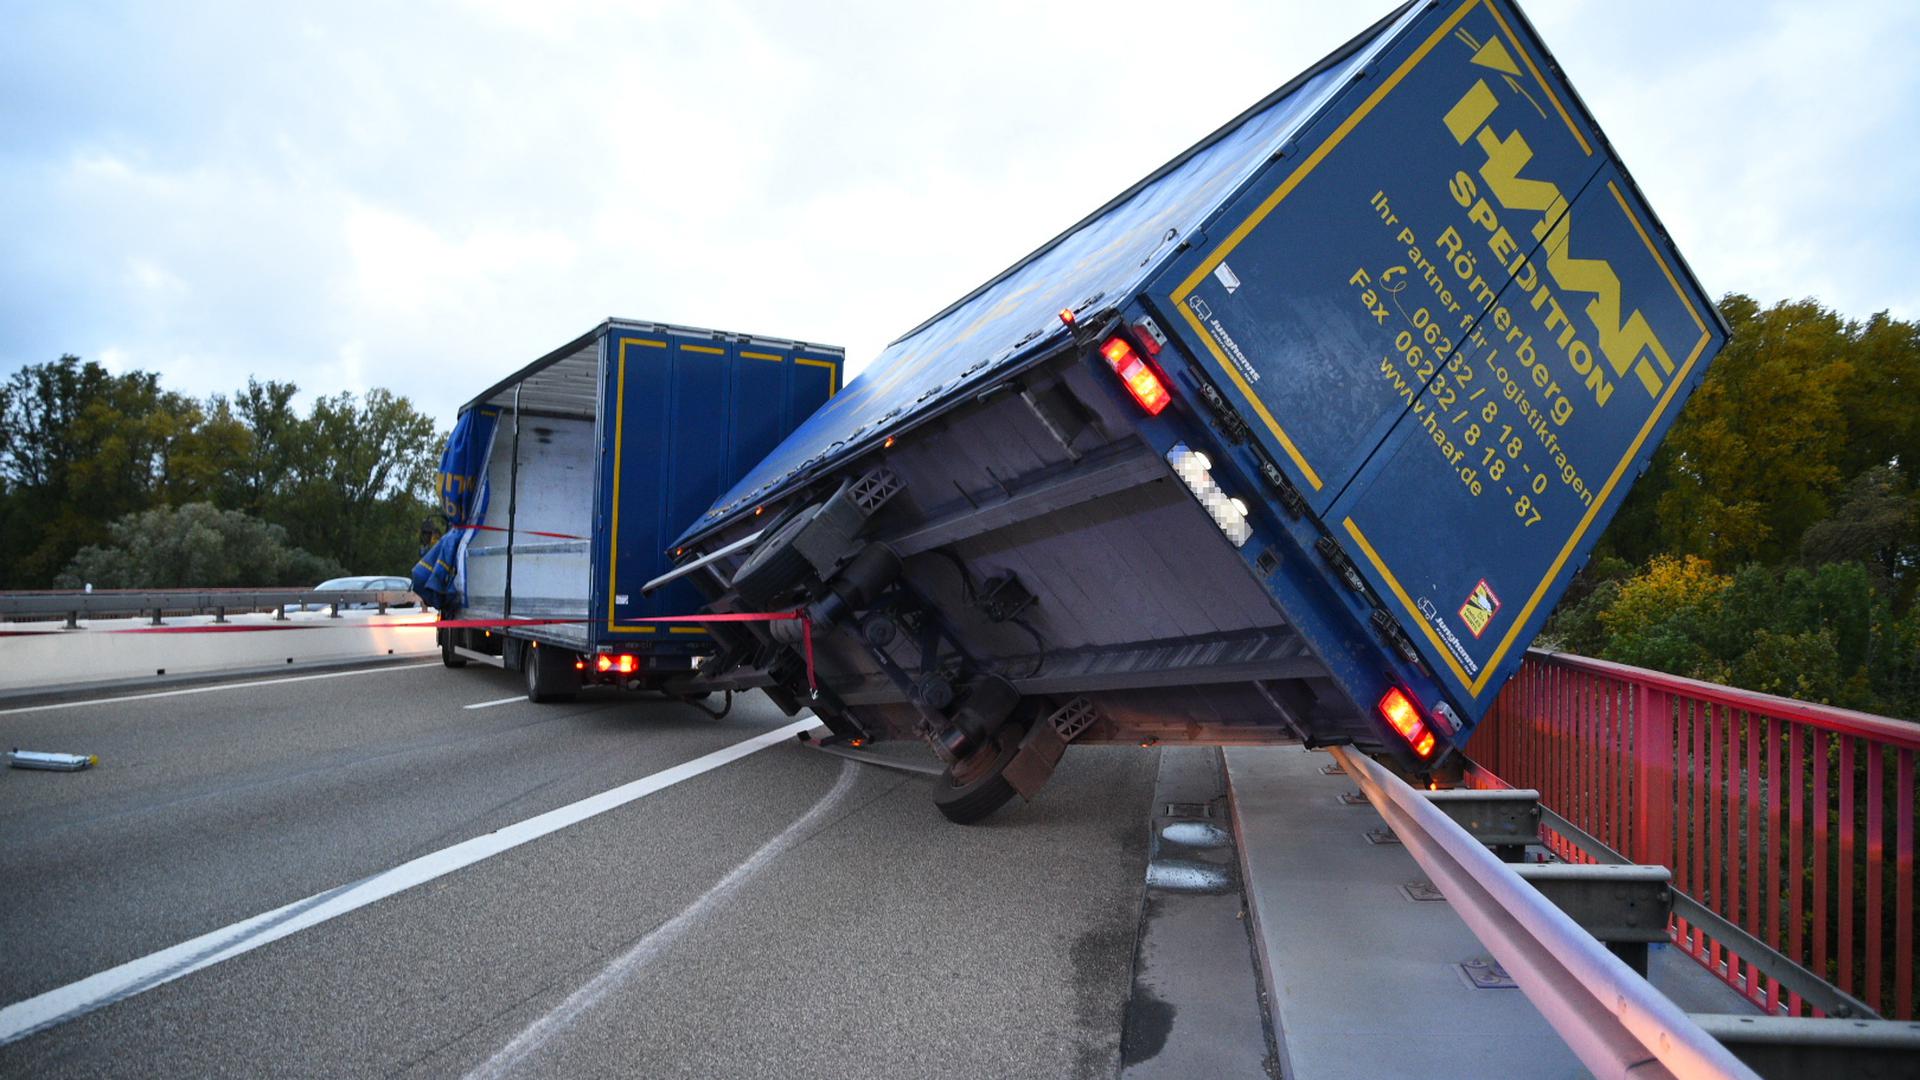 Komplett gesperrt: Keine Durchfahrt gab es auf der Rheinbrücke Speyer, nachdem der Anhänger eines Lastwagens umgekippt war.